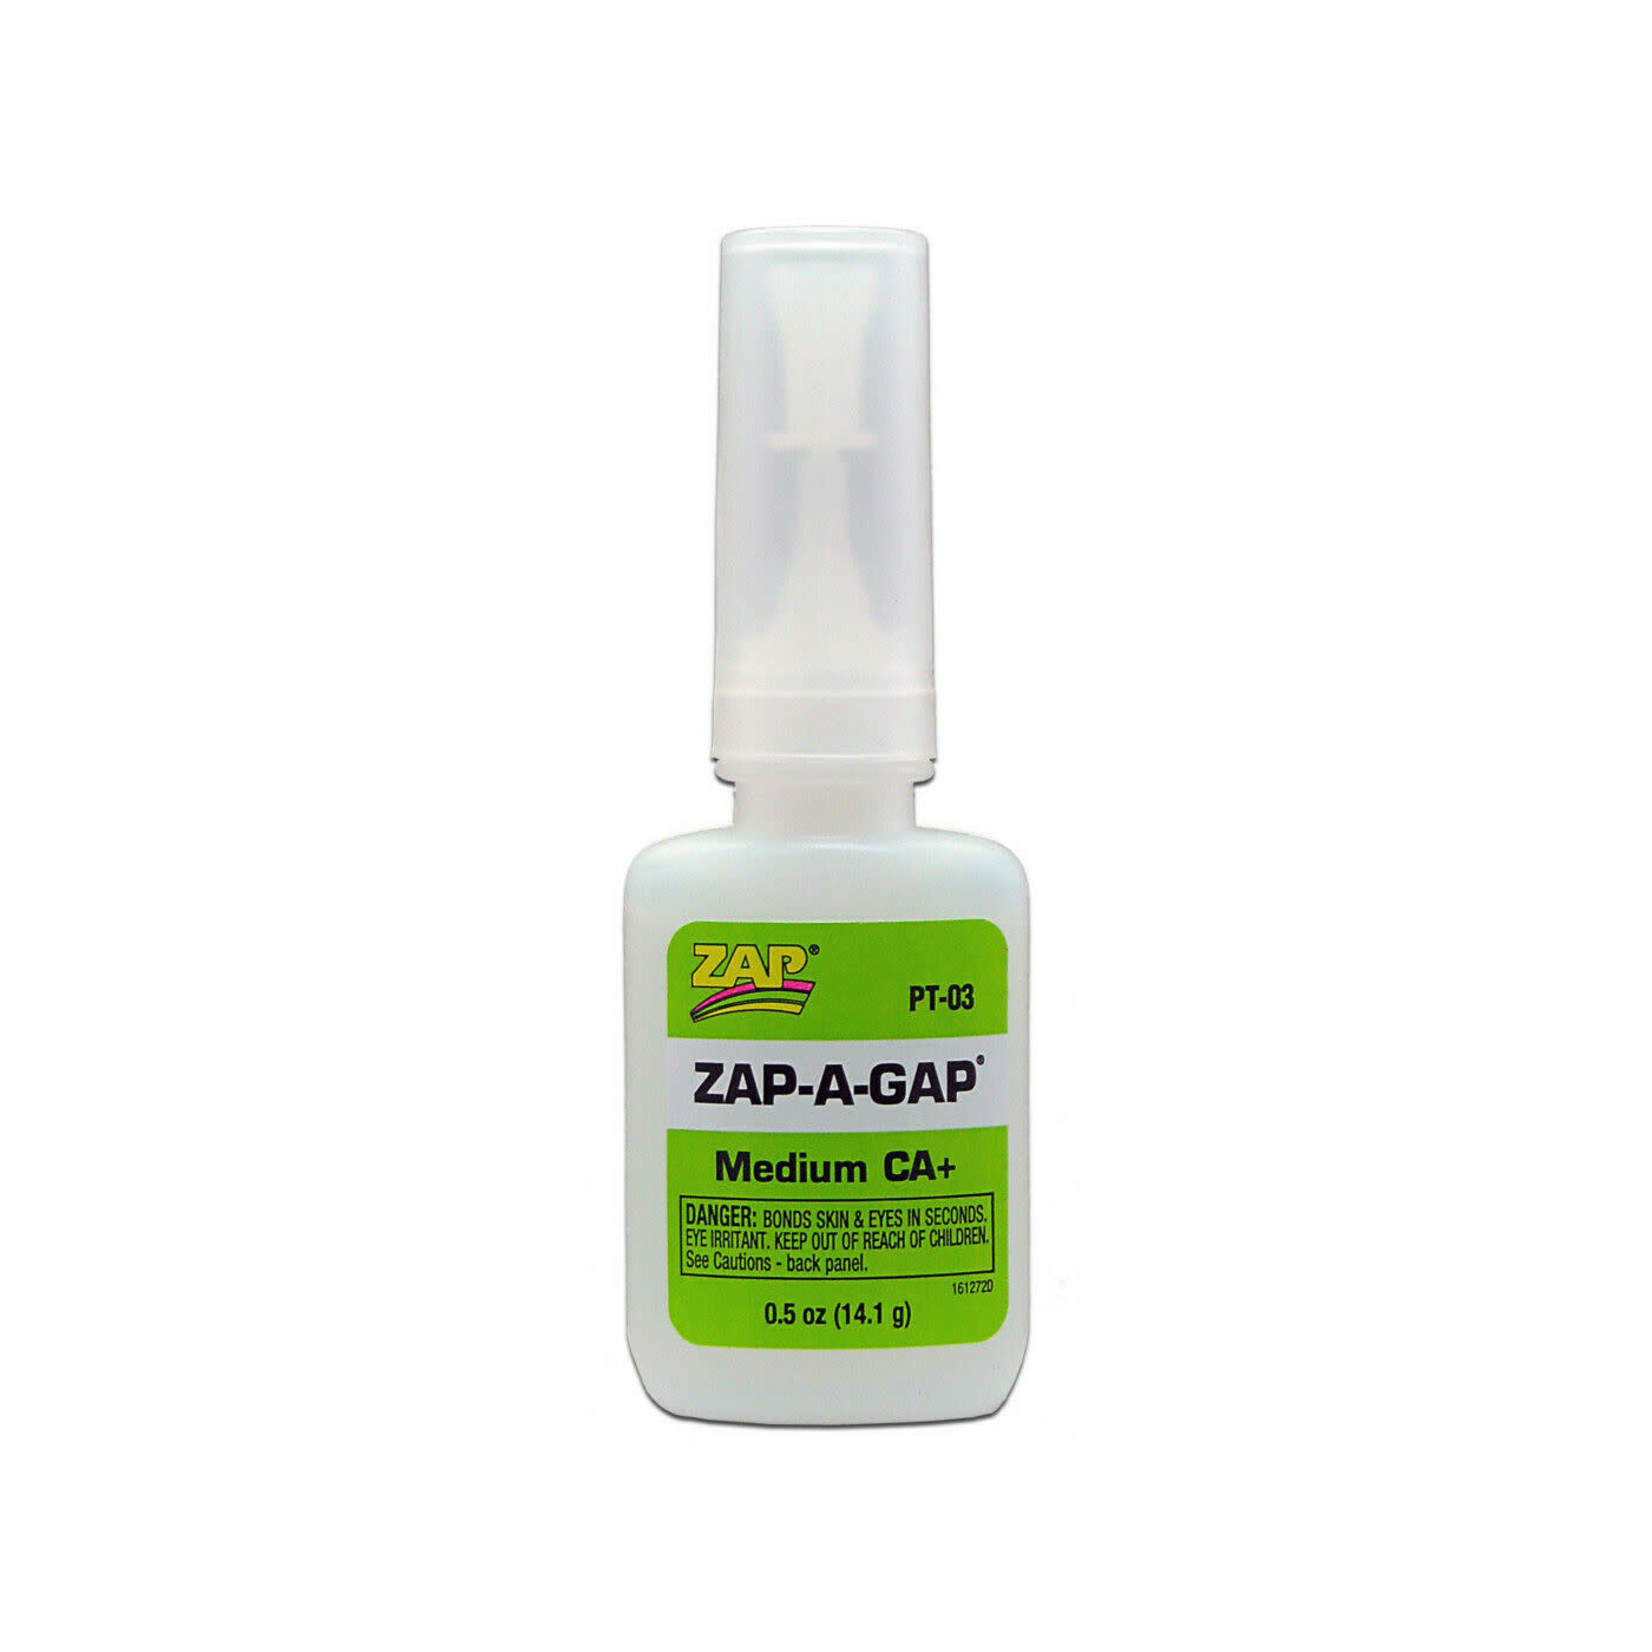 Zap Glue Zap-a-gap Medium CA Super Glue 1/2 oz